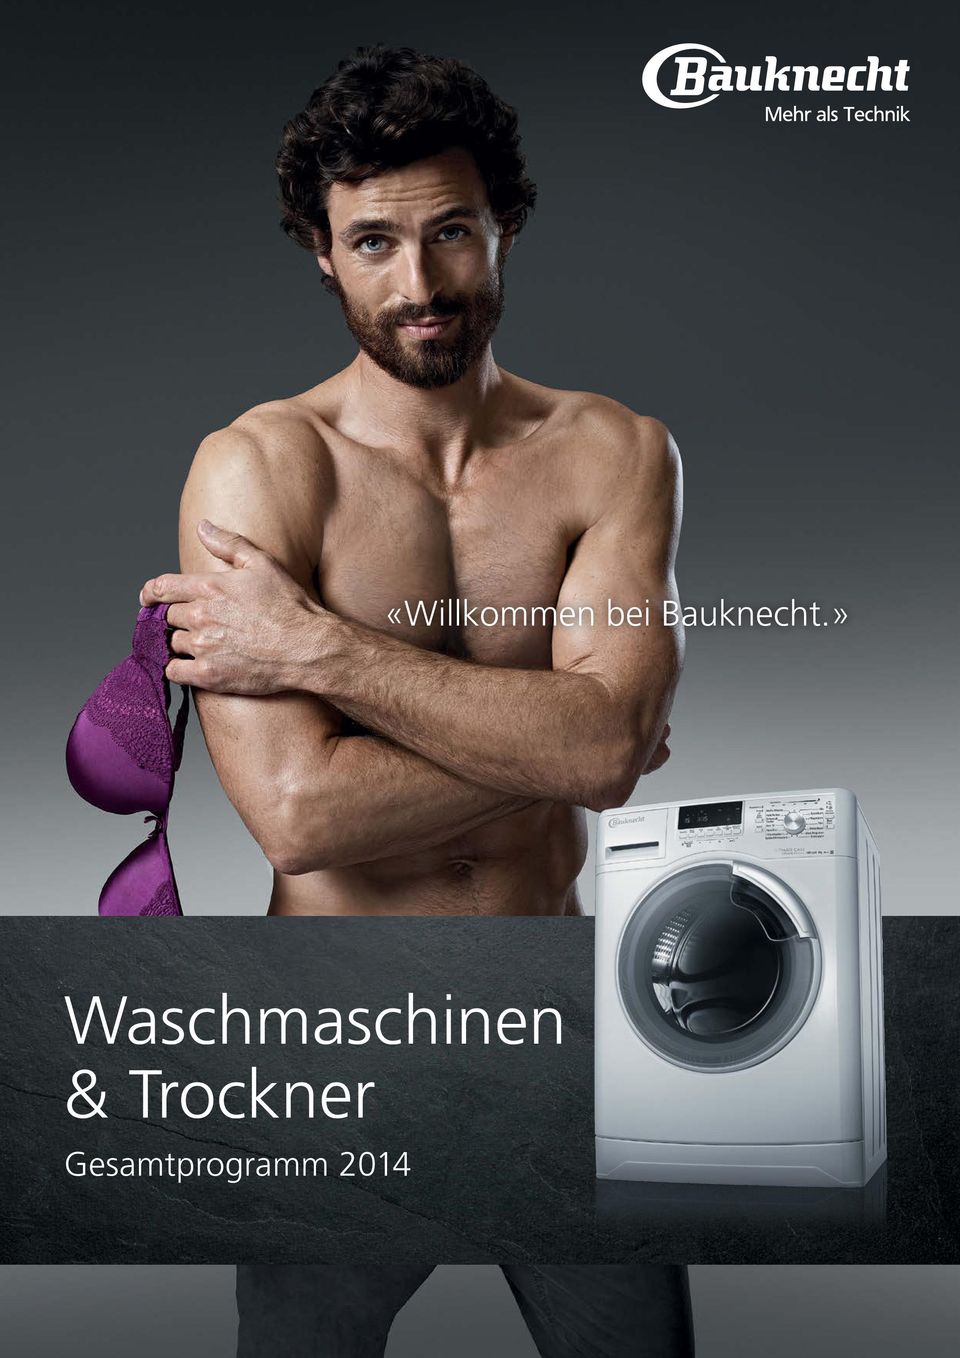 » Waschmaschinen &